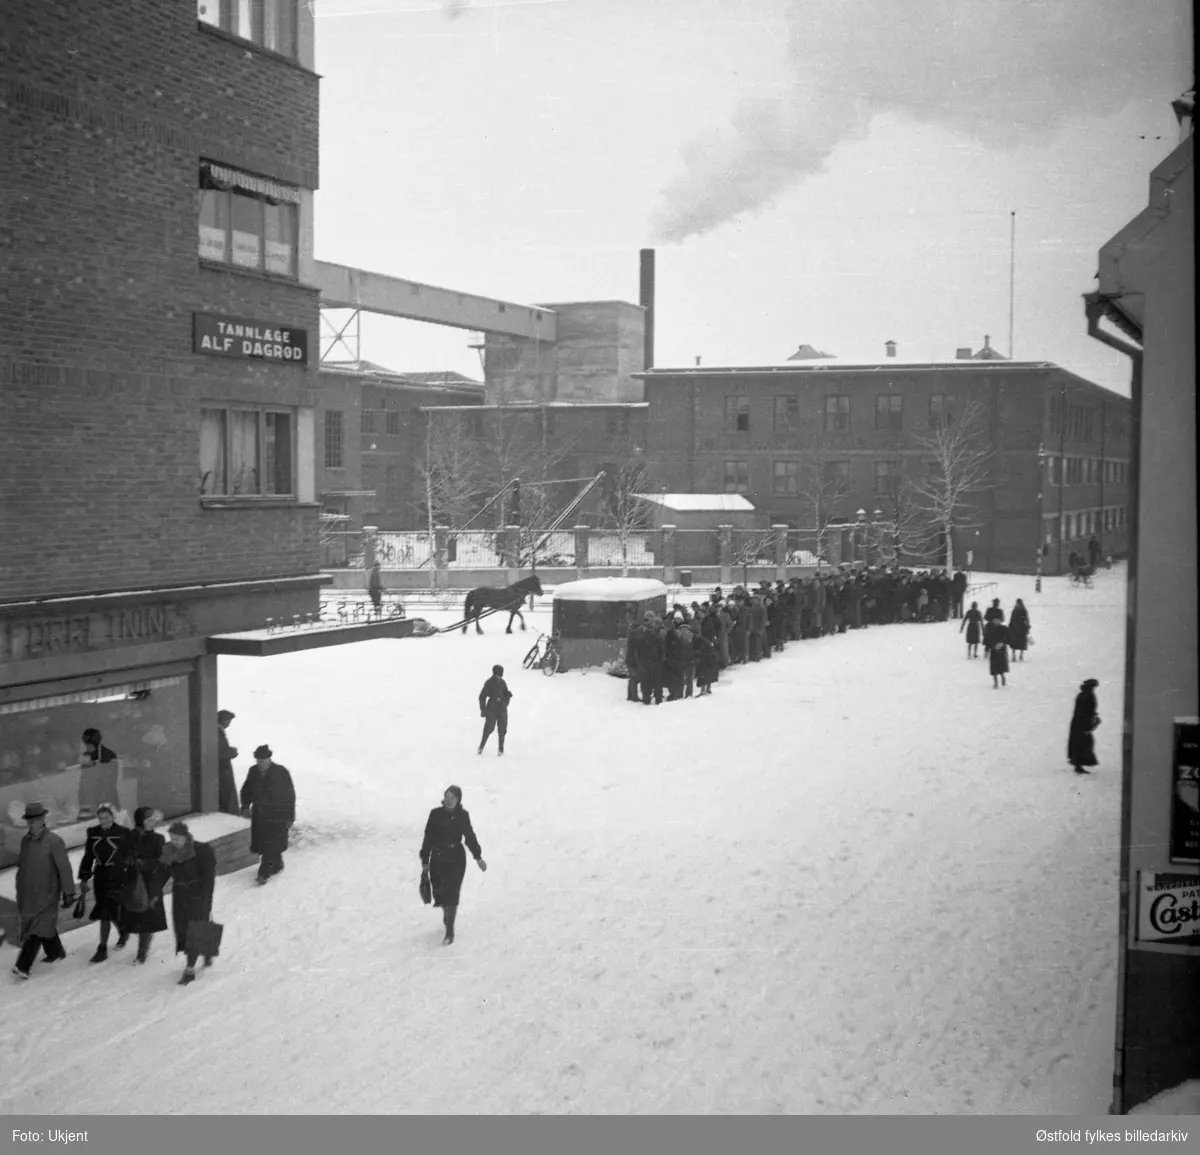 Folk i kø for kjøtt og fisk under 2. verdenskrig i Askim 1940-1945. Askim gummivarefabrikk i bakgrunnen.
Bygning til venstre, Bilitt, med skilt for tannlege Alf Dagrød, og glassmagasin i første etasje, ant. Askim Elektriske forretning og glassmagasin A/S.